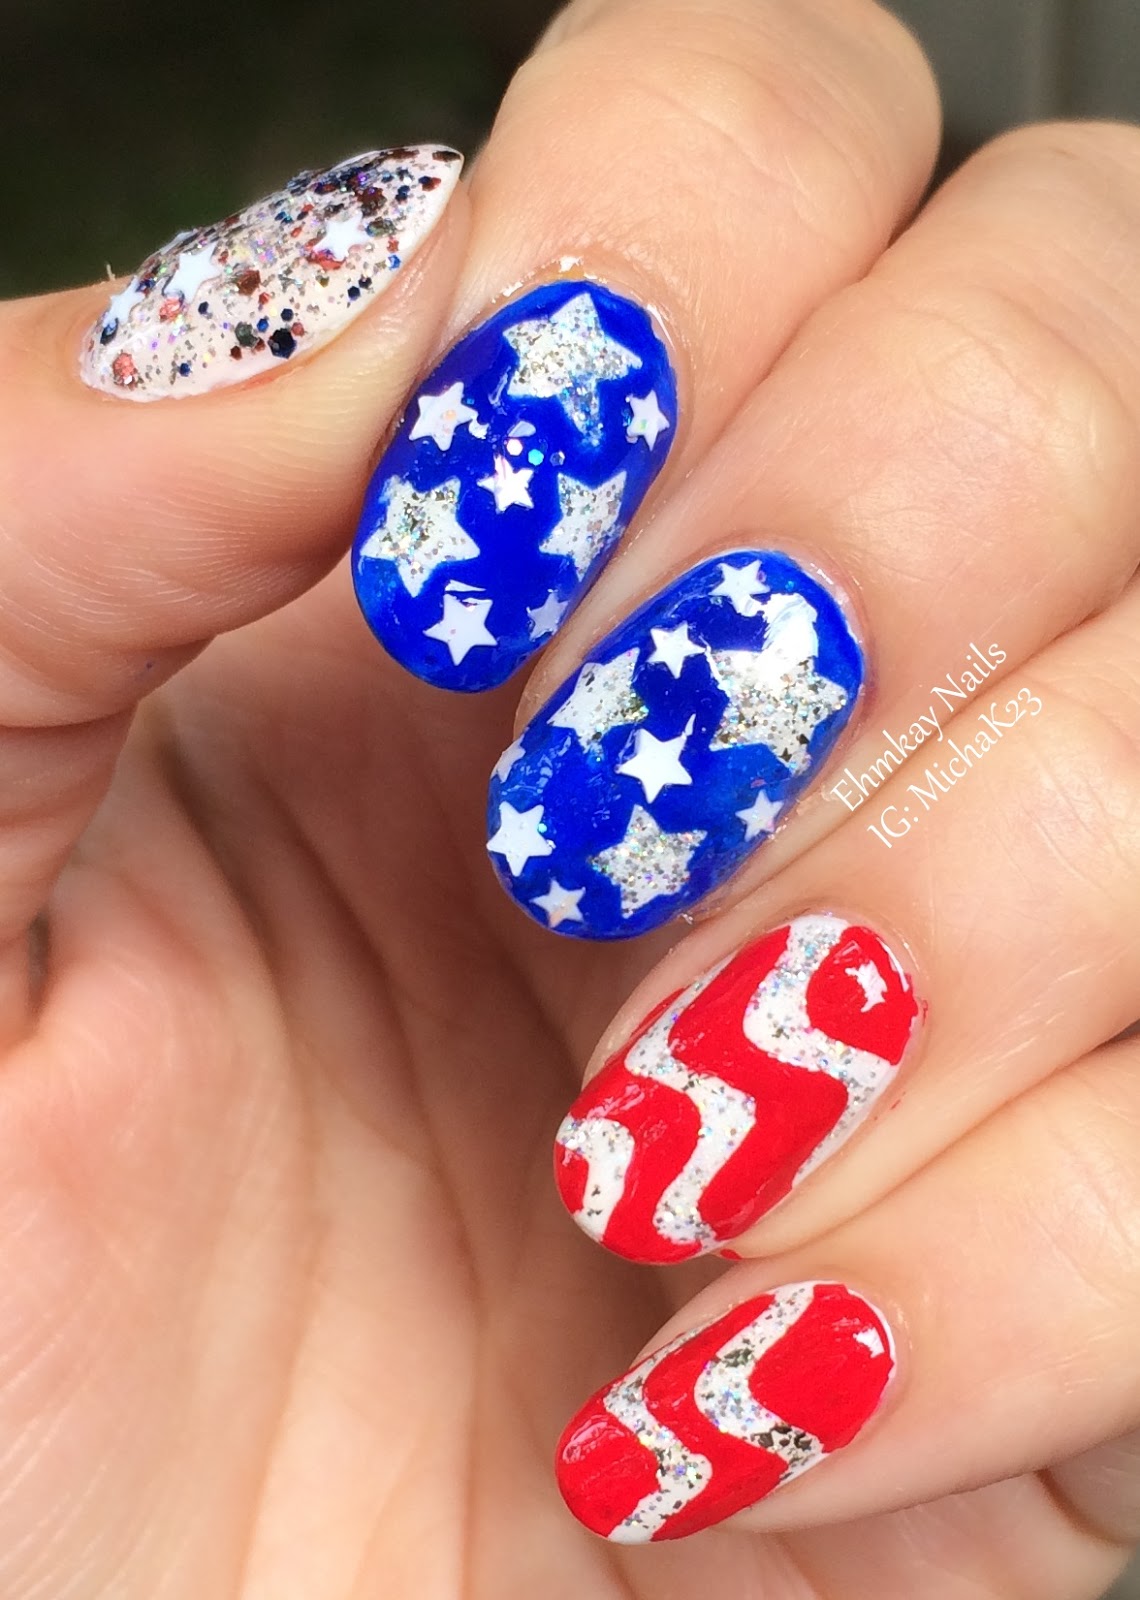 ehmkay nails: American Flag Nail Art